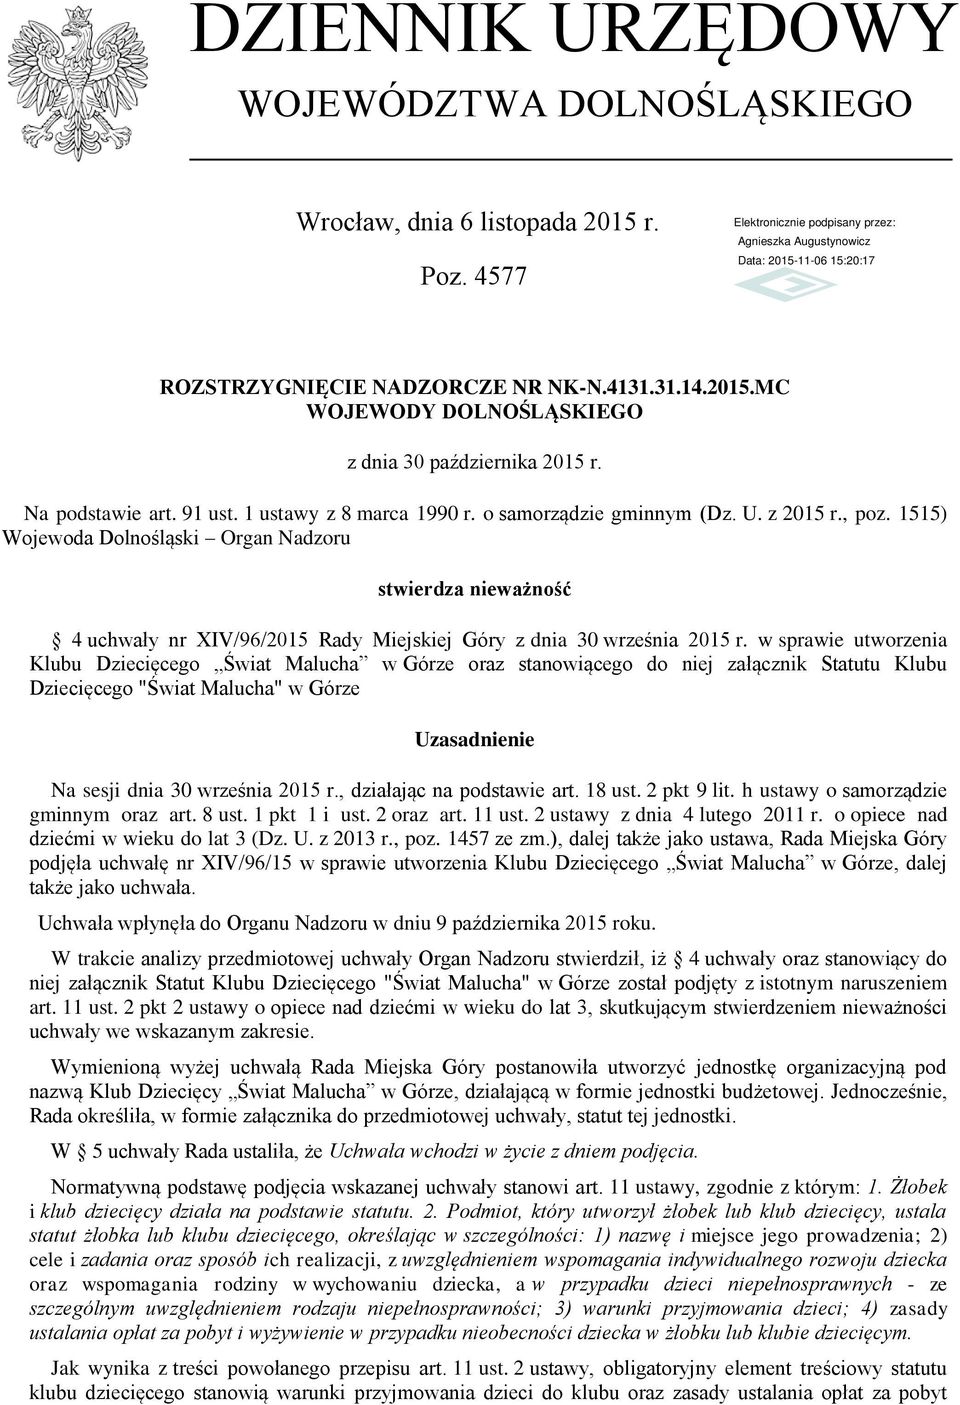 1515) Wojewoda Dolnośląski Organ Nadzoru stwierdza nieważność 4 uchwały nr XIV/96/2015 Rady Miejskiej Góry z dnia 30 września 2015 r.